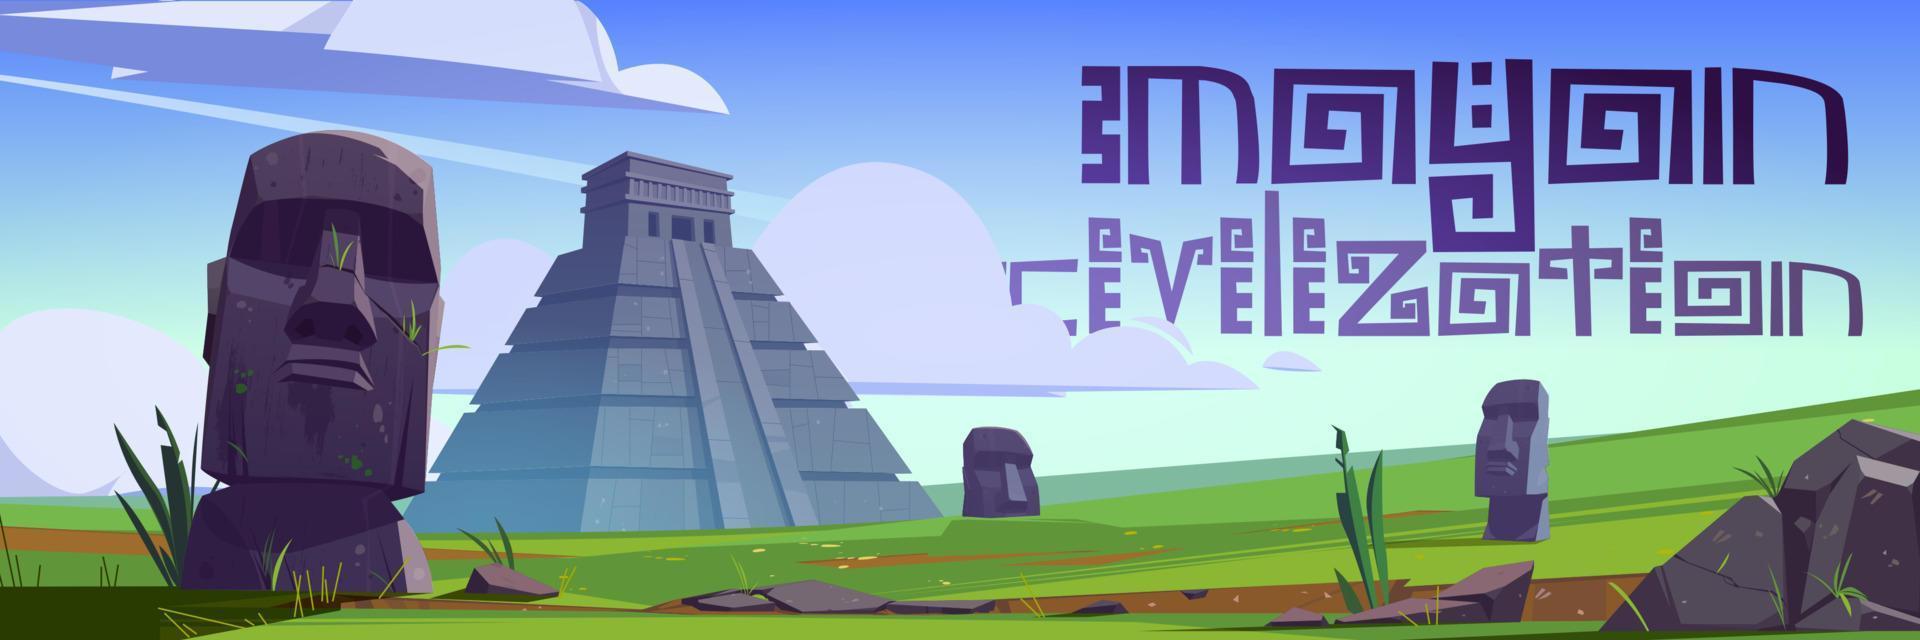 monuments de la civilisation maya et statues moai vecteur